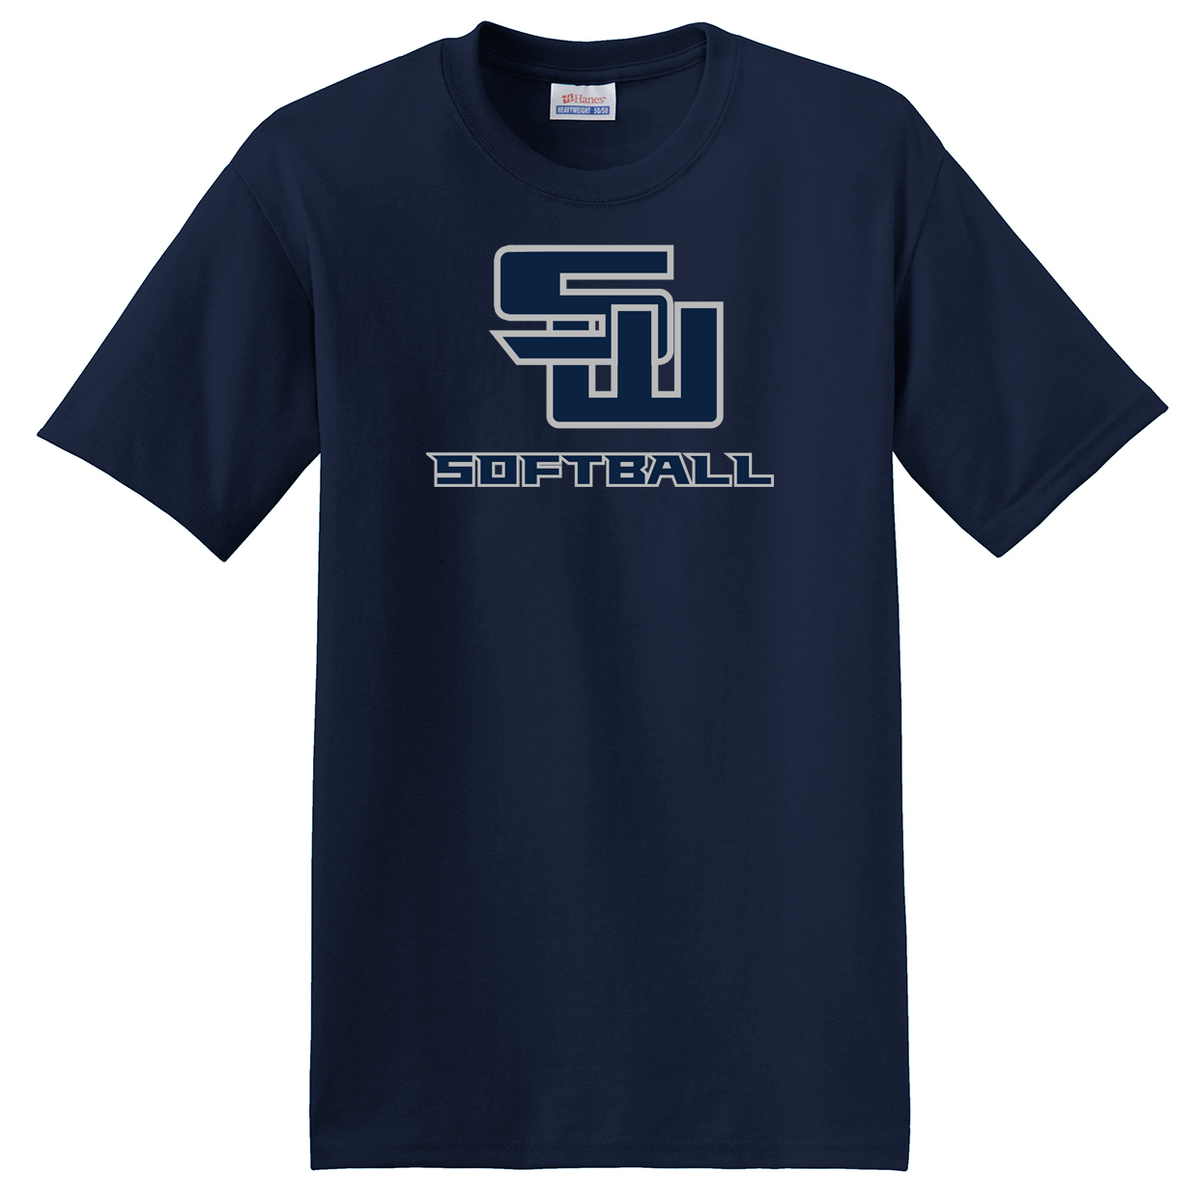 Smithtown West Softball T-Shirt